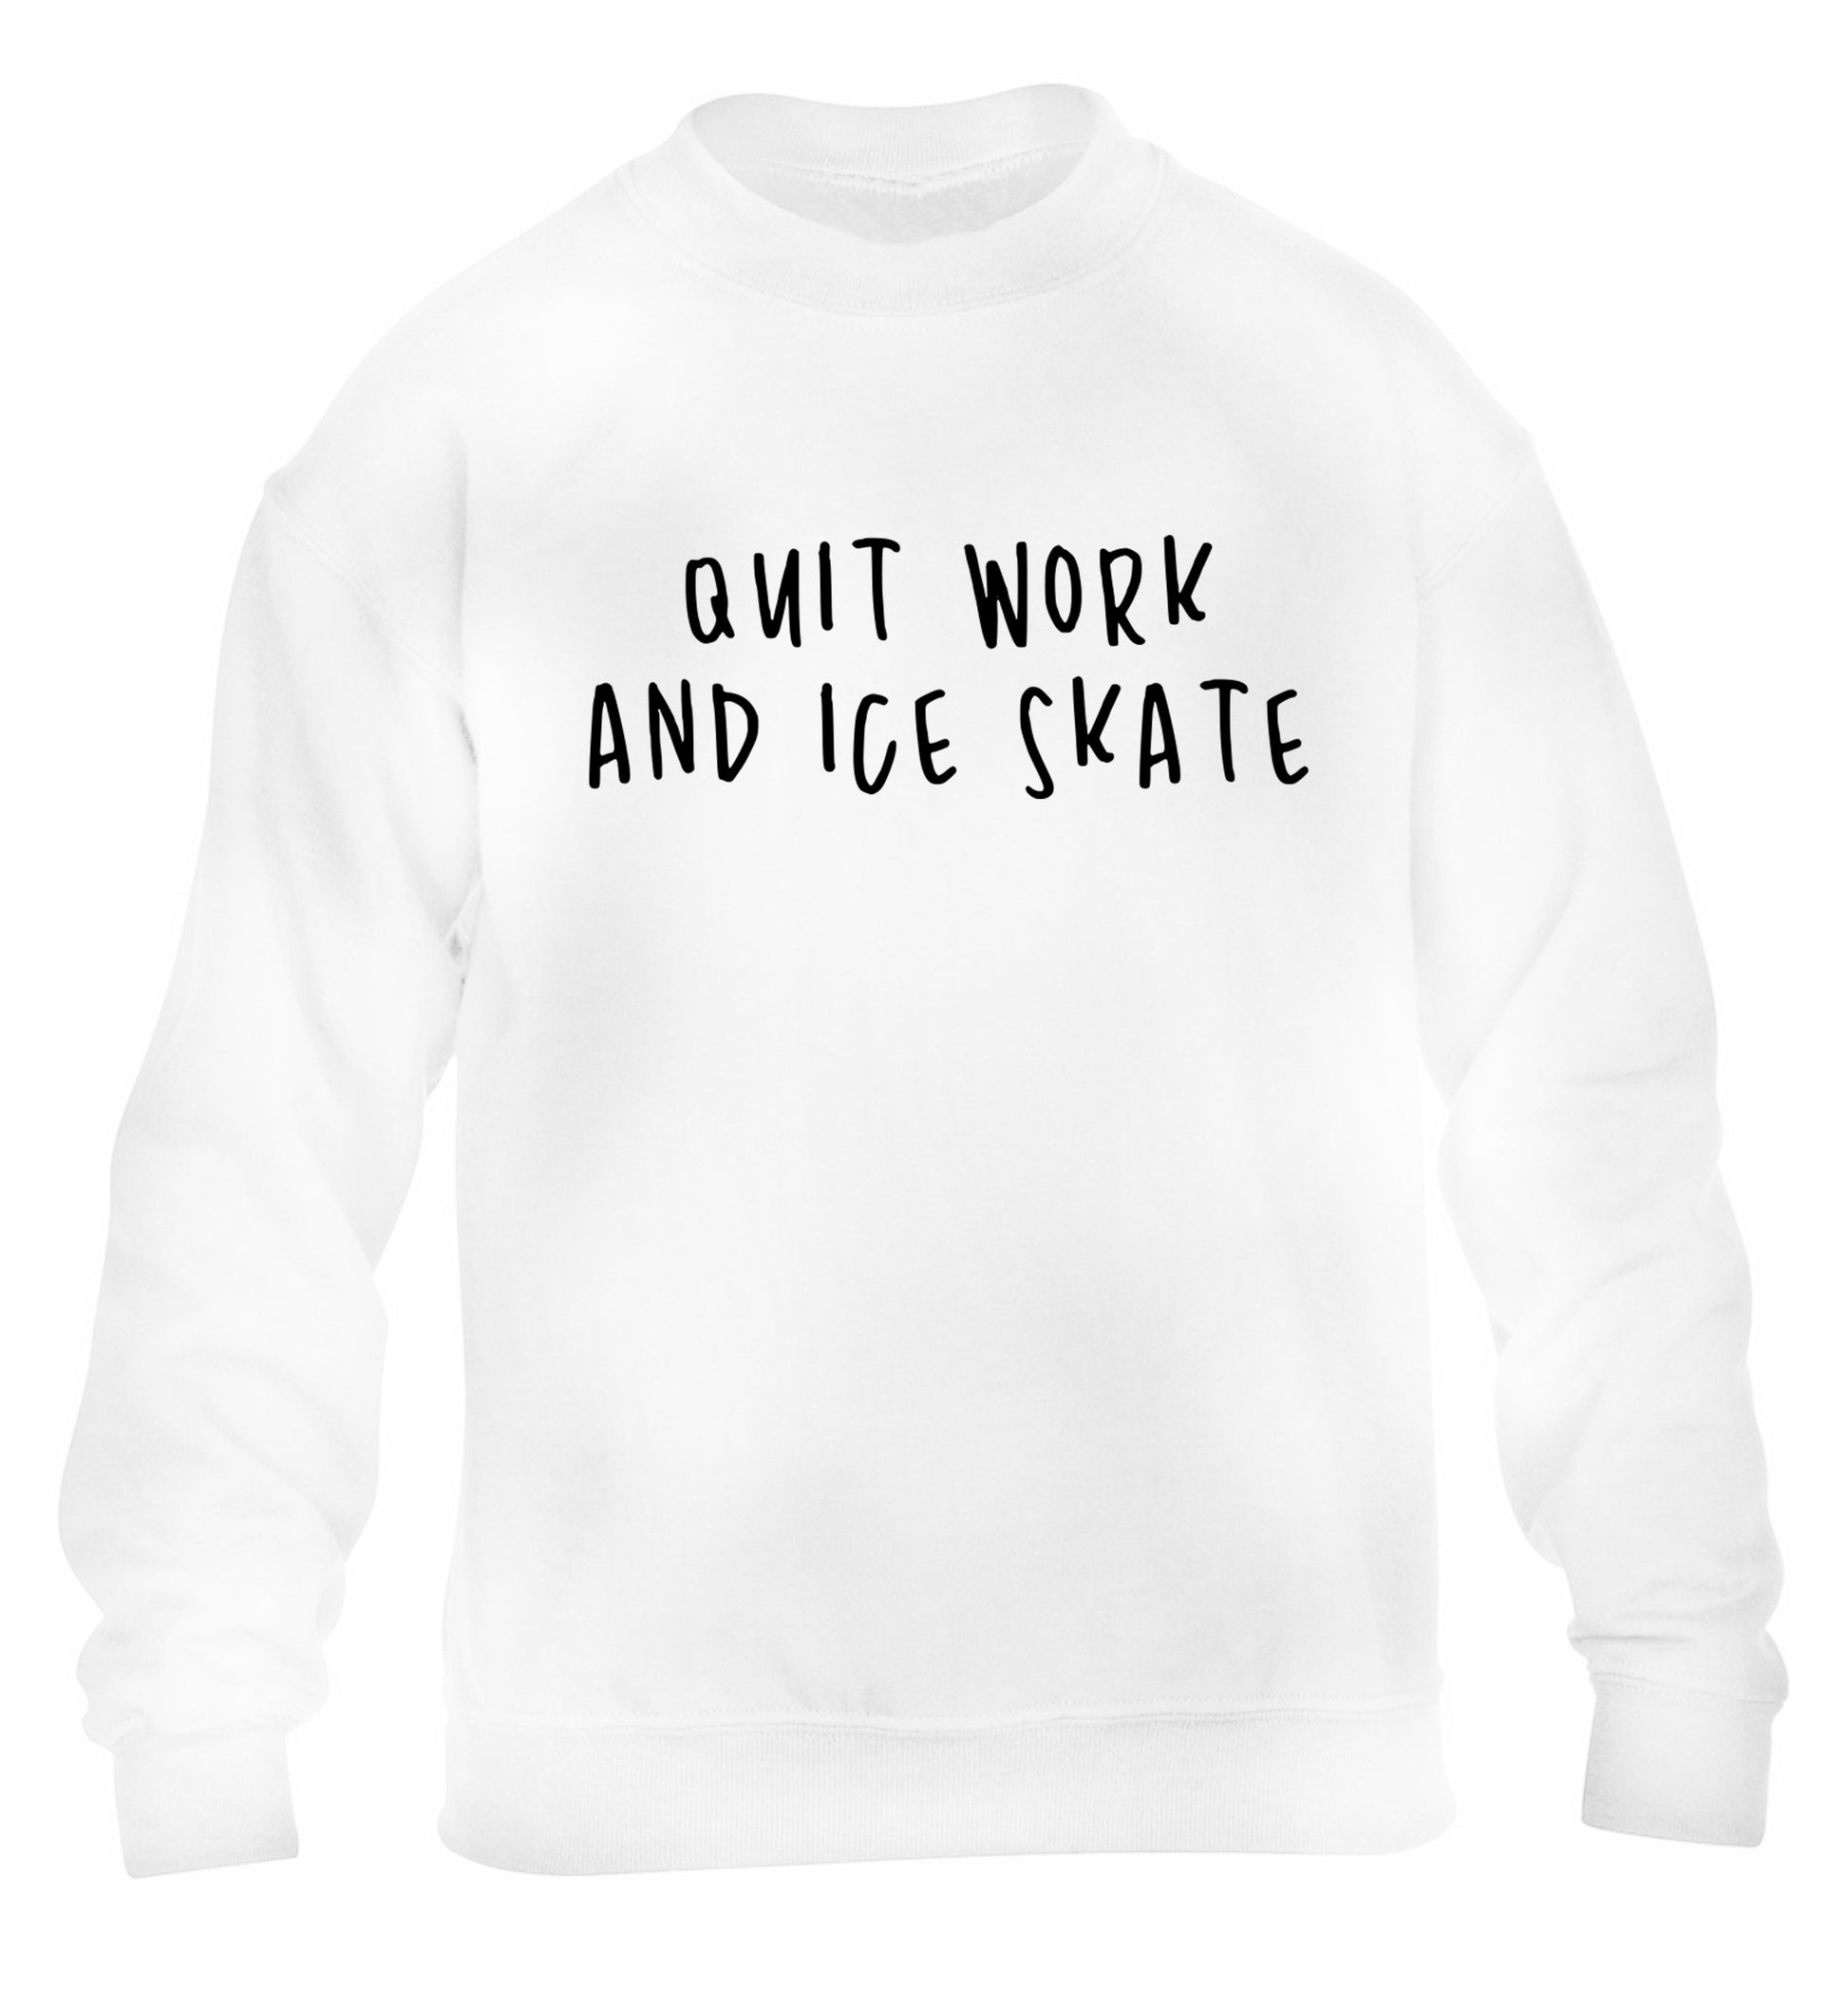 Quit work ice skate children's white sweater 12-14 Years